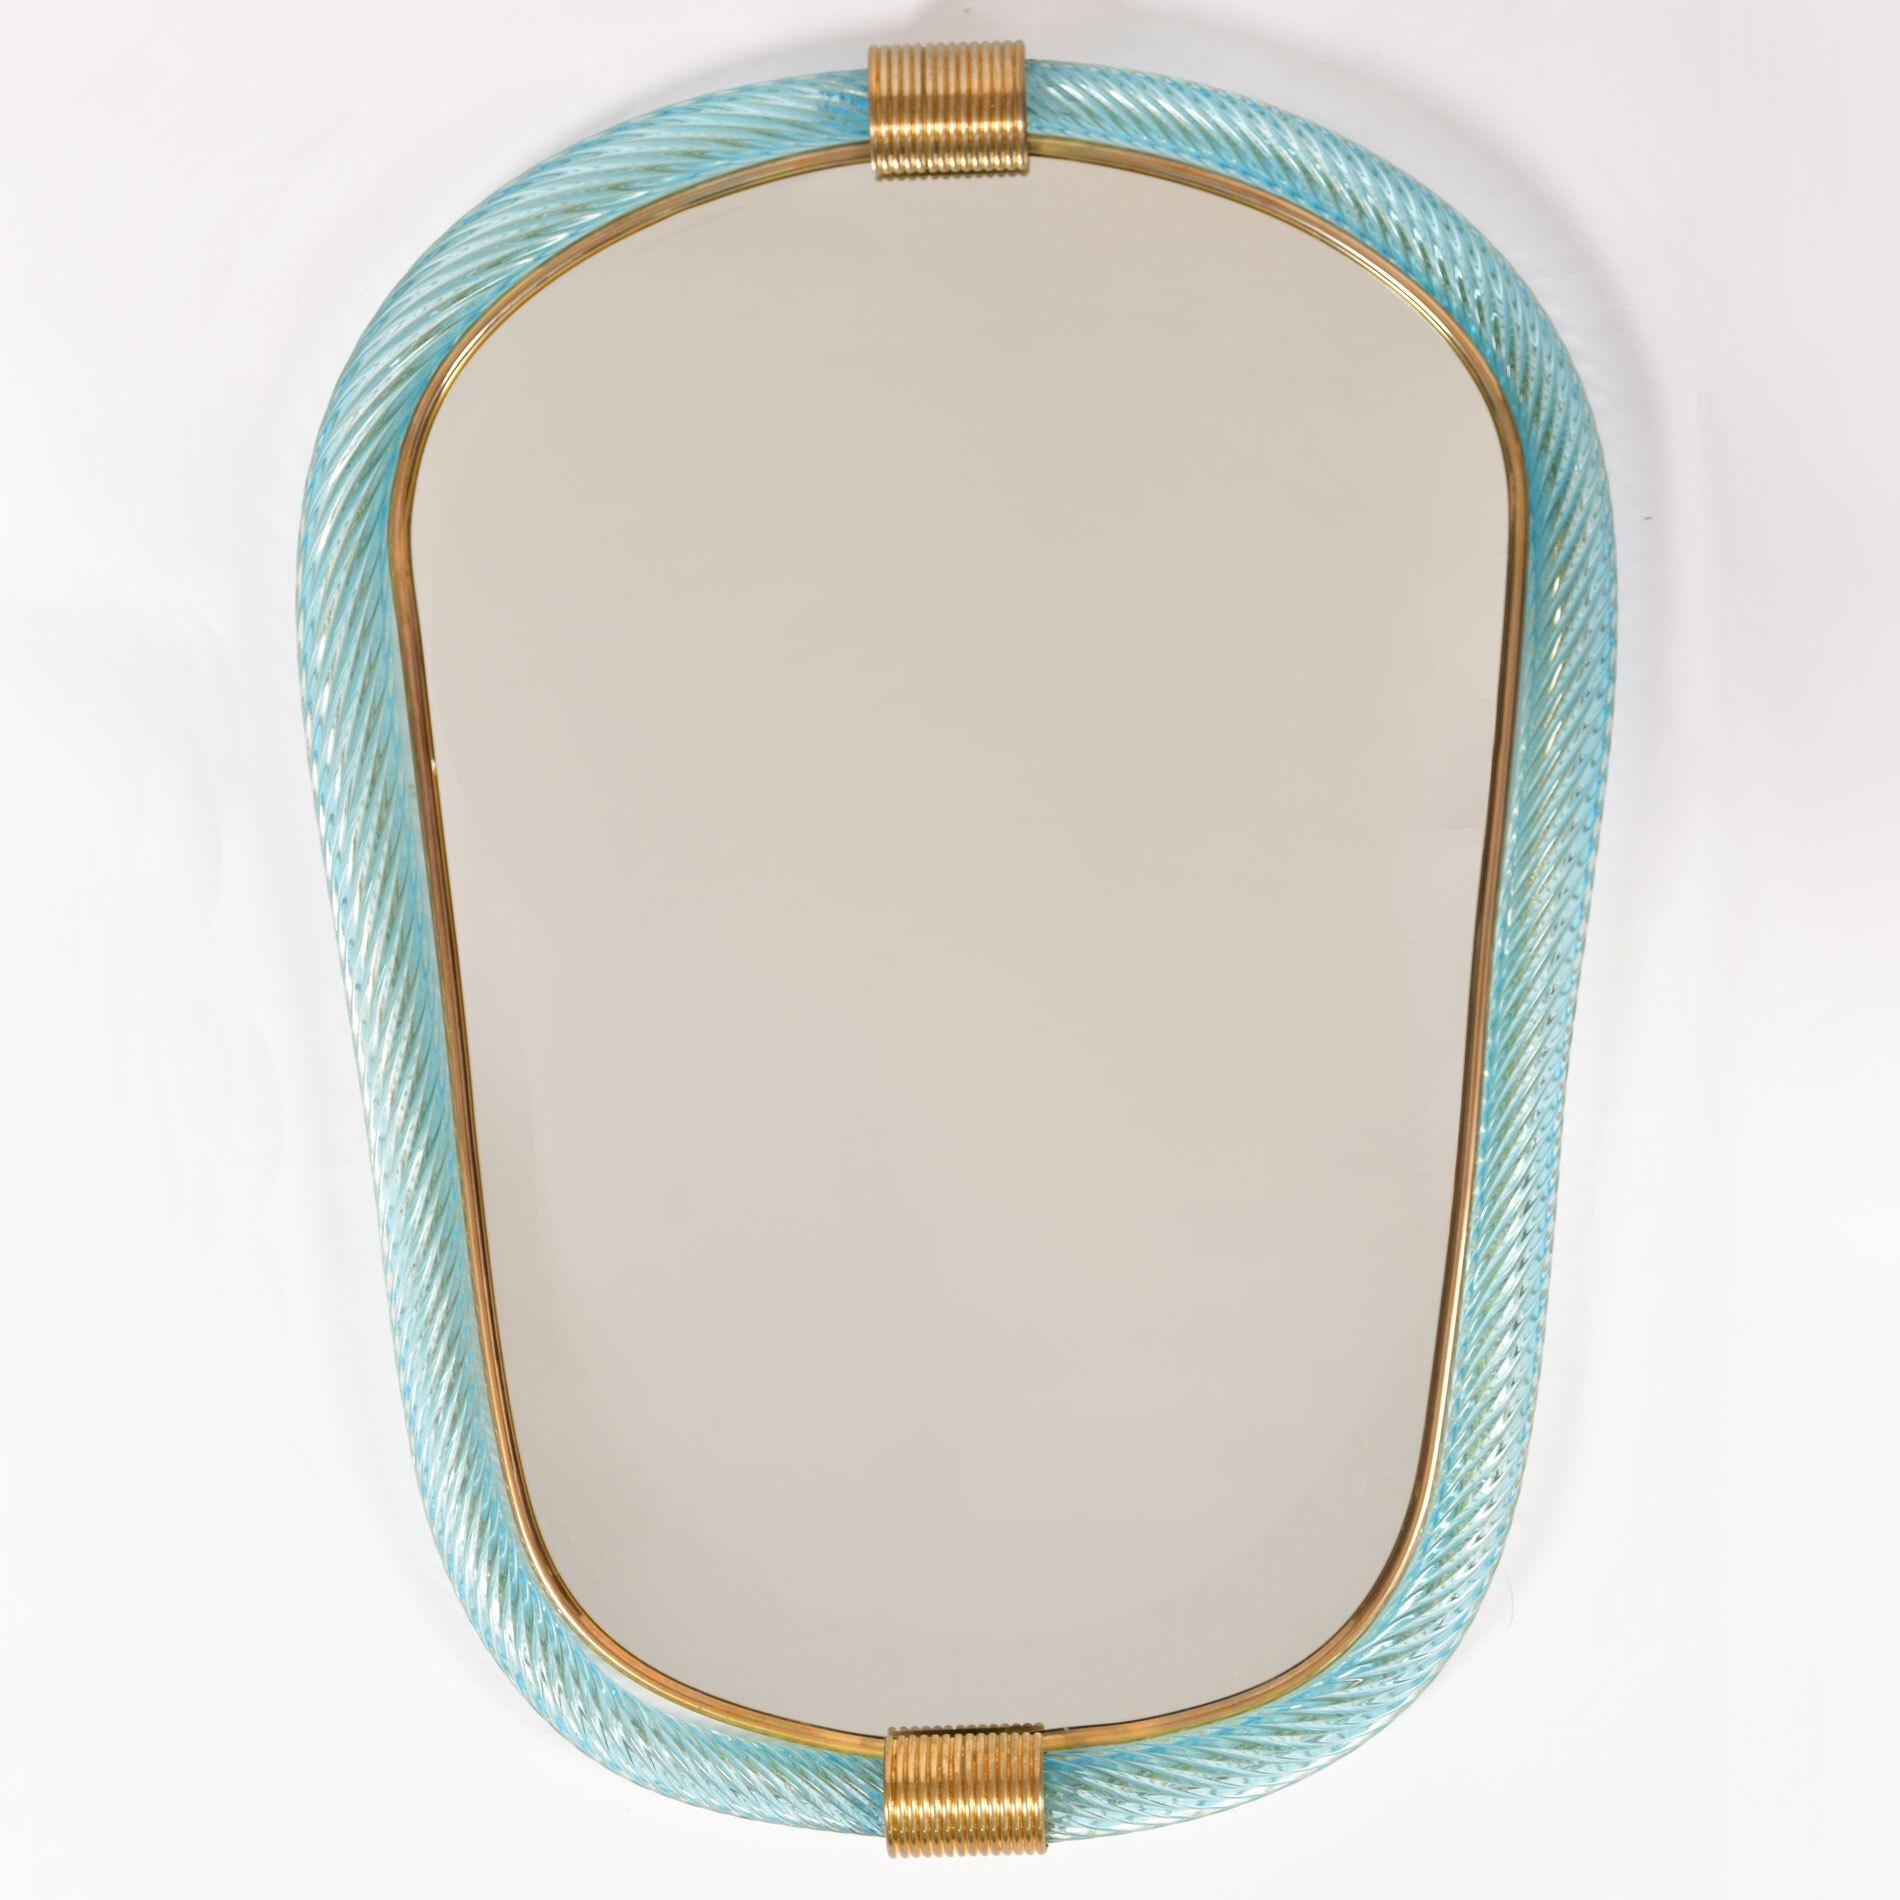 Paire de miroirs eliptiques en verre de Murano soufflé à la main, à côtes vert pâle/bleu, avec deux fermoirs cannelés en laiton en haut et en bas, le bord intérieur étant bordé d'un mince filet en laiton.

Existe aussi en rose pâle.

Délai de 8 à 9